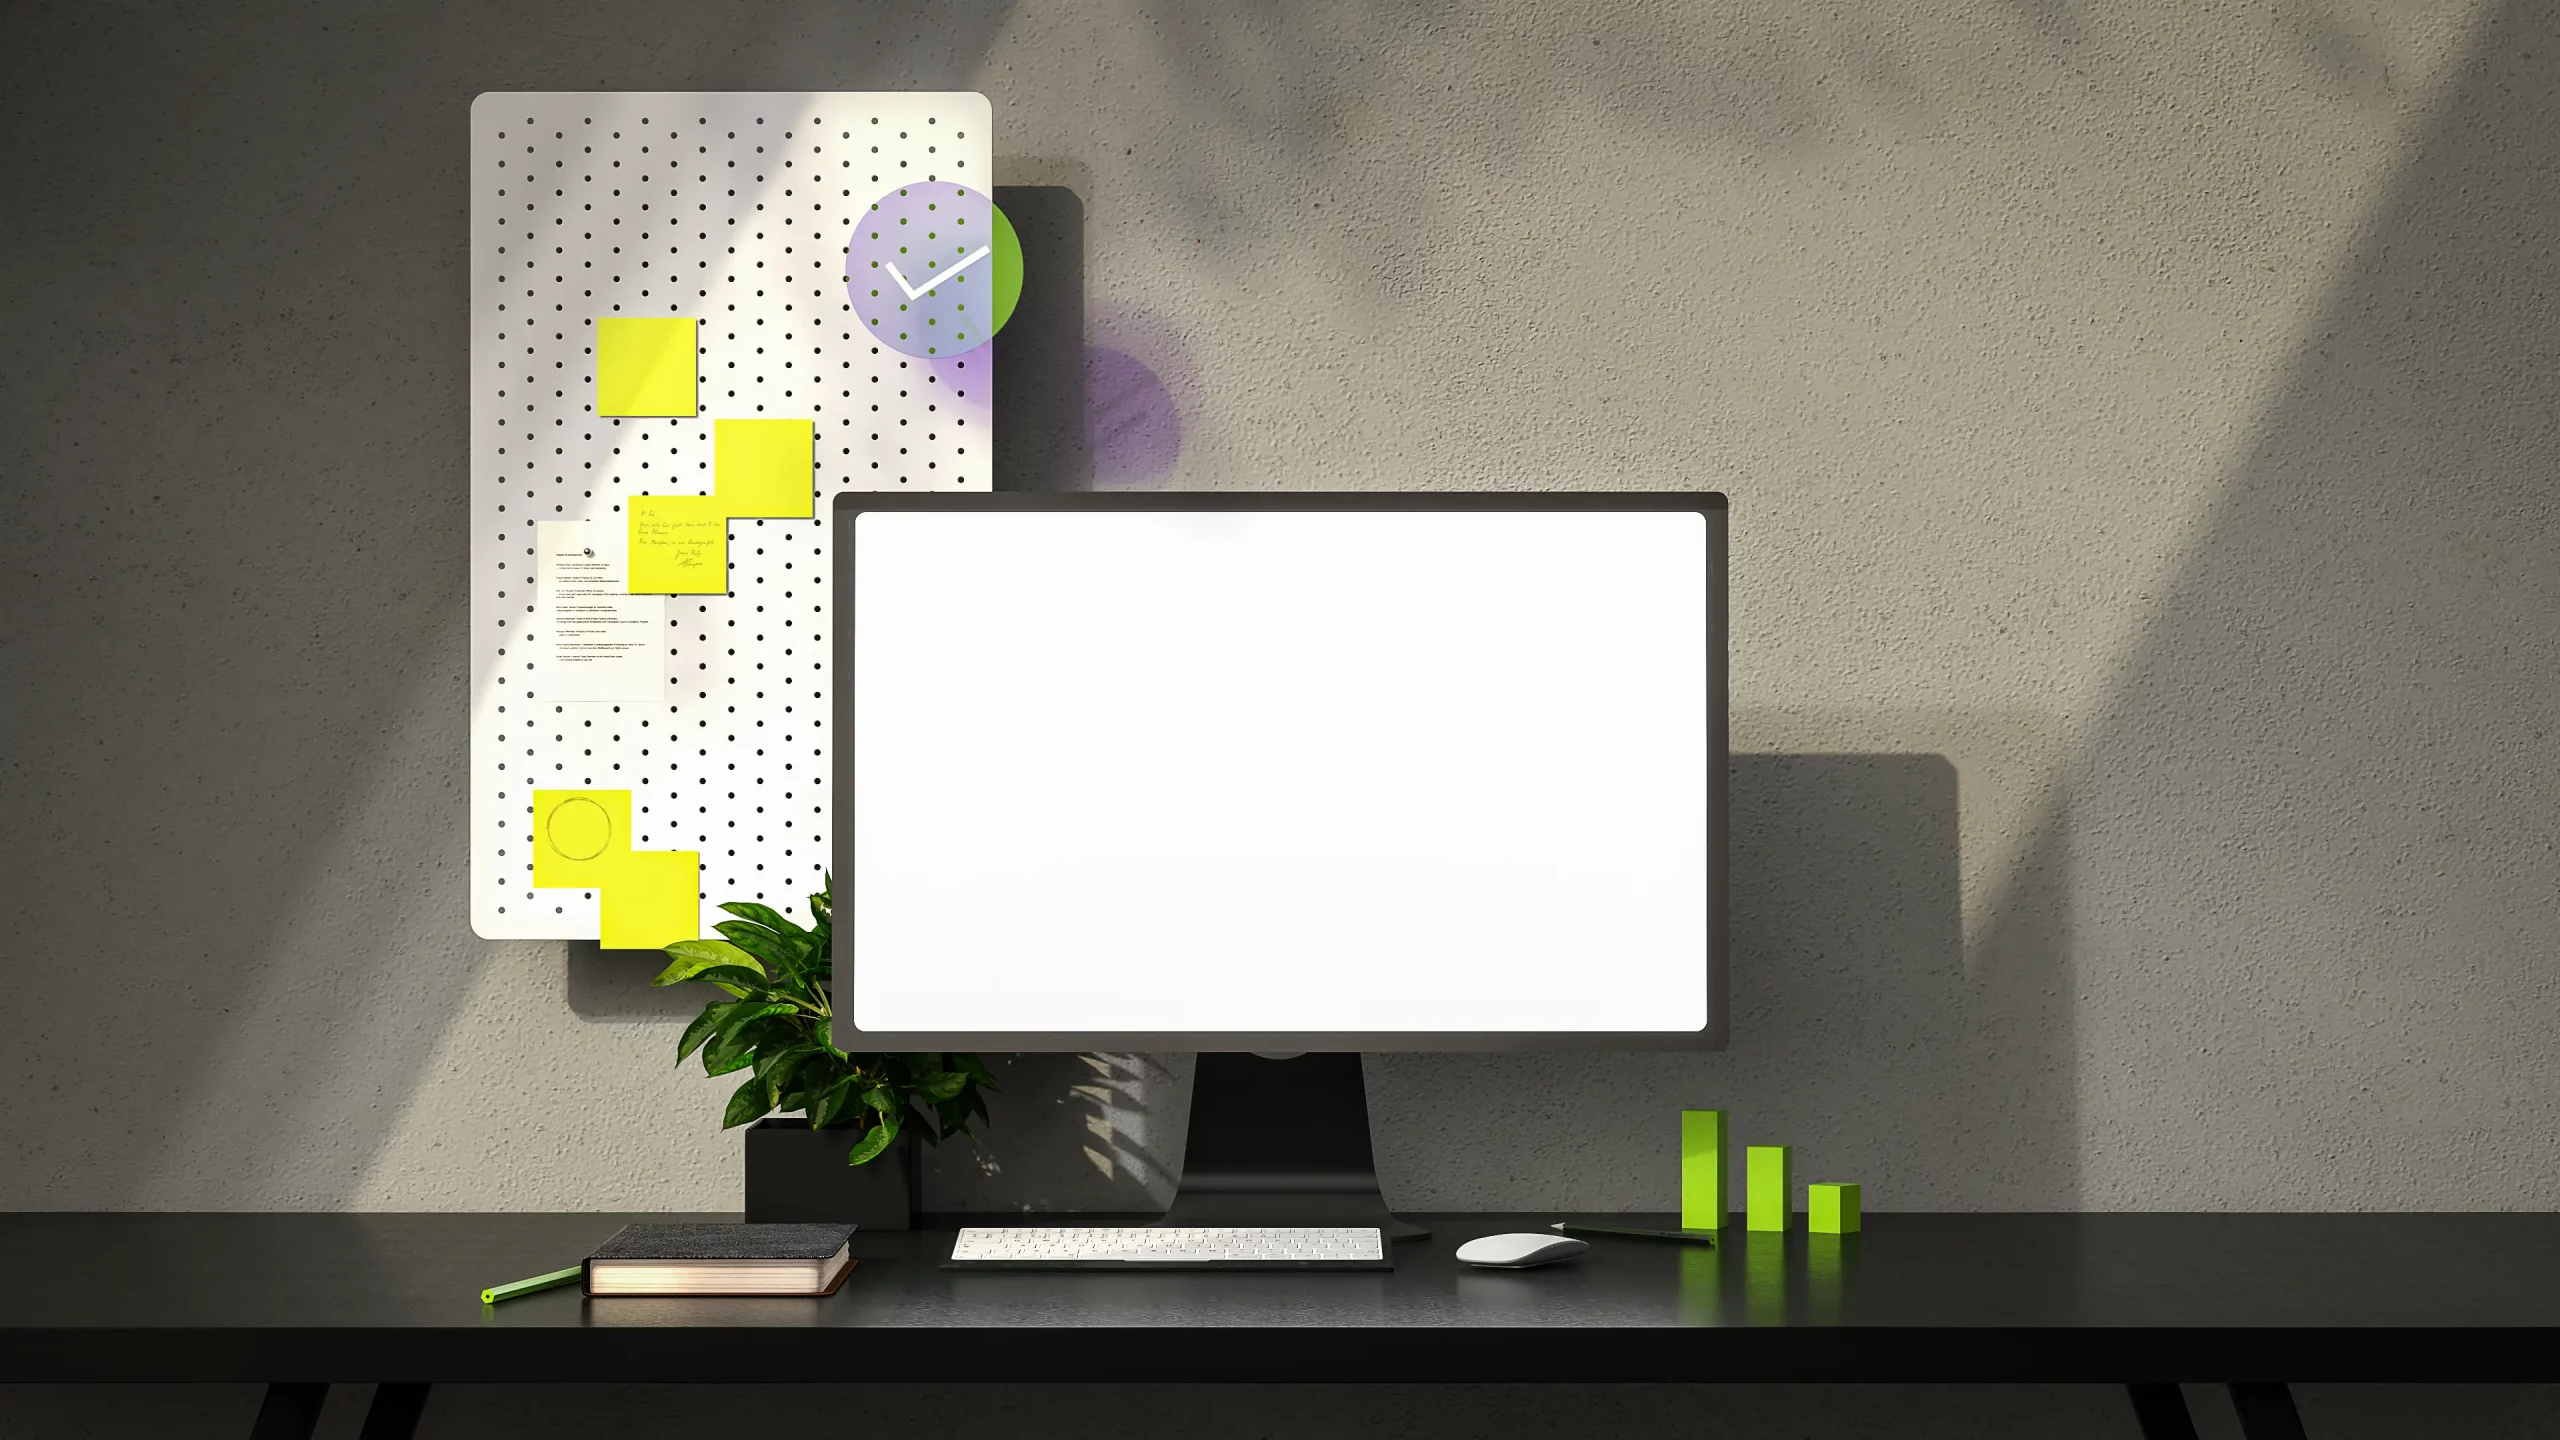 Minimalistischer Arbeitsplatz mit leerem Monitor, Pflanzen, Notizen auf Pinnwand und Uhr im Hintergrund. Moderne Büroeinrichtung.